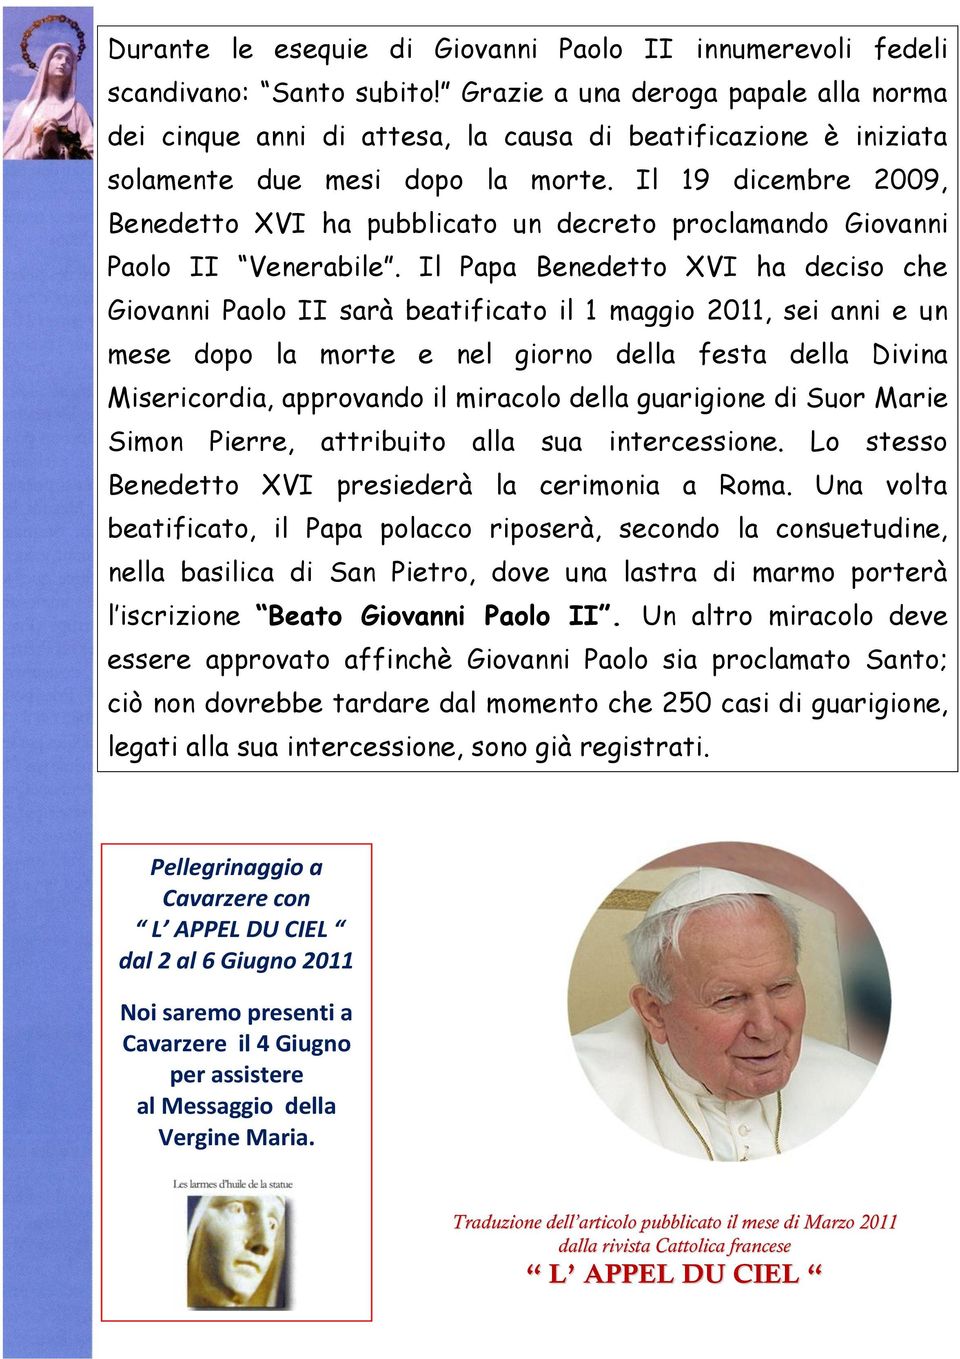 Il 19 dicembre 2009, Benedetto XVI ha pubblicato un decreto proclamando Giovanni Paolo II Venerabile.